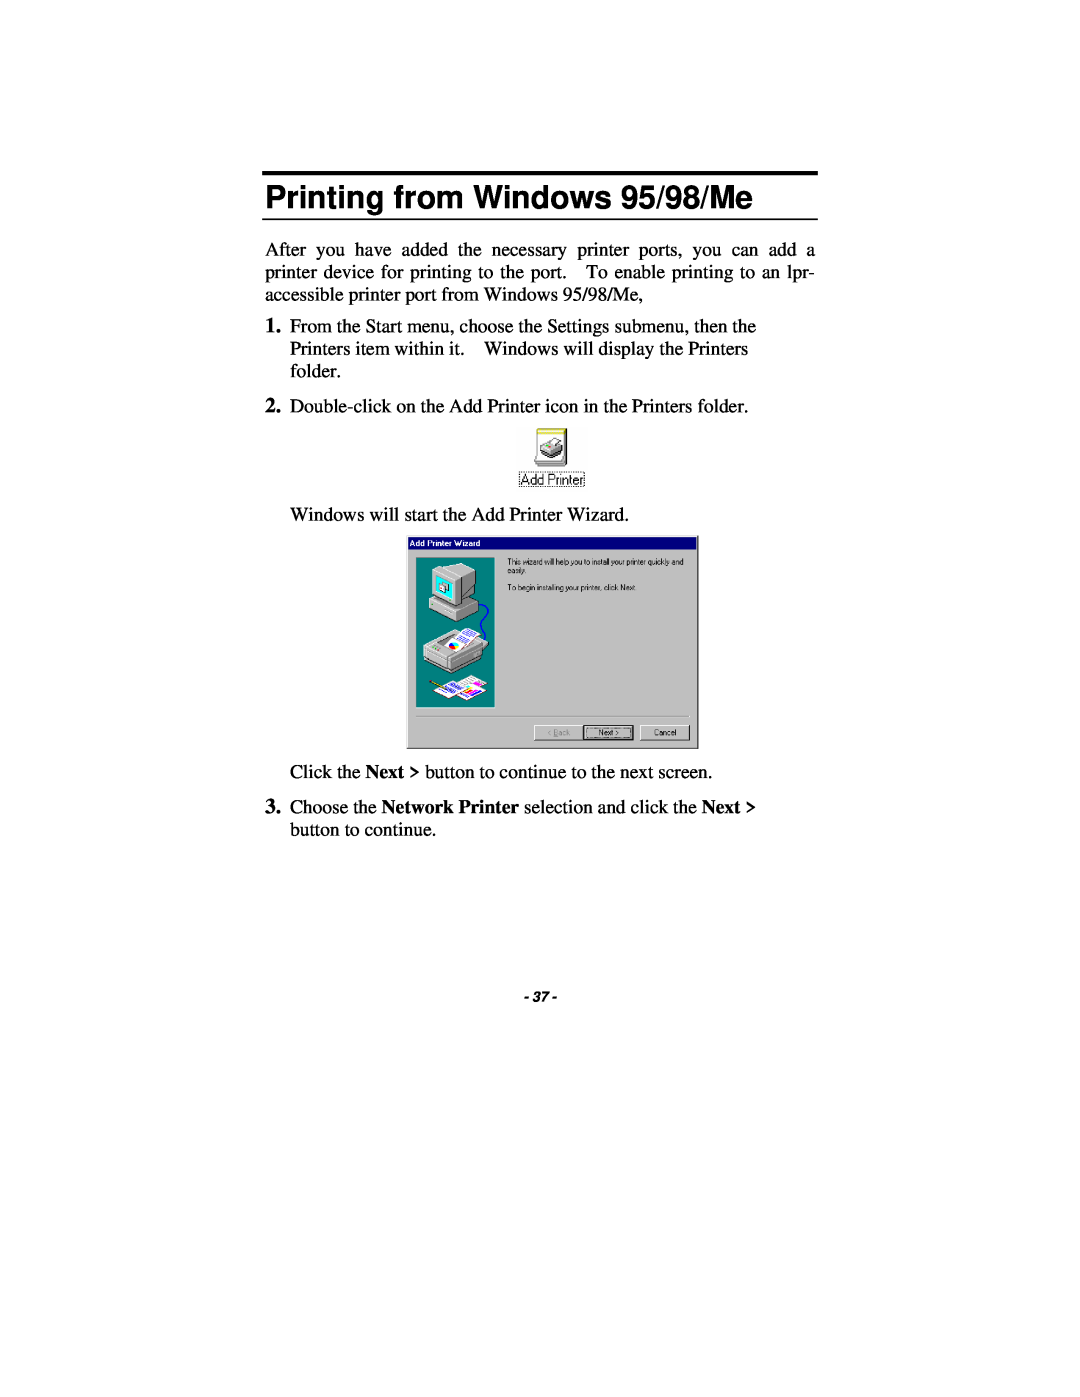 TRENDnet TE100-P1P manual Printing from Windows 95/98/Me 